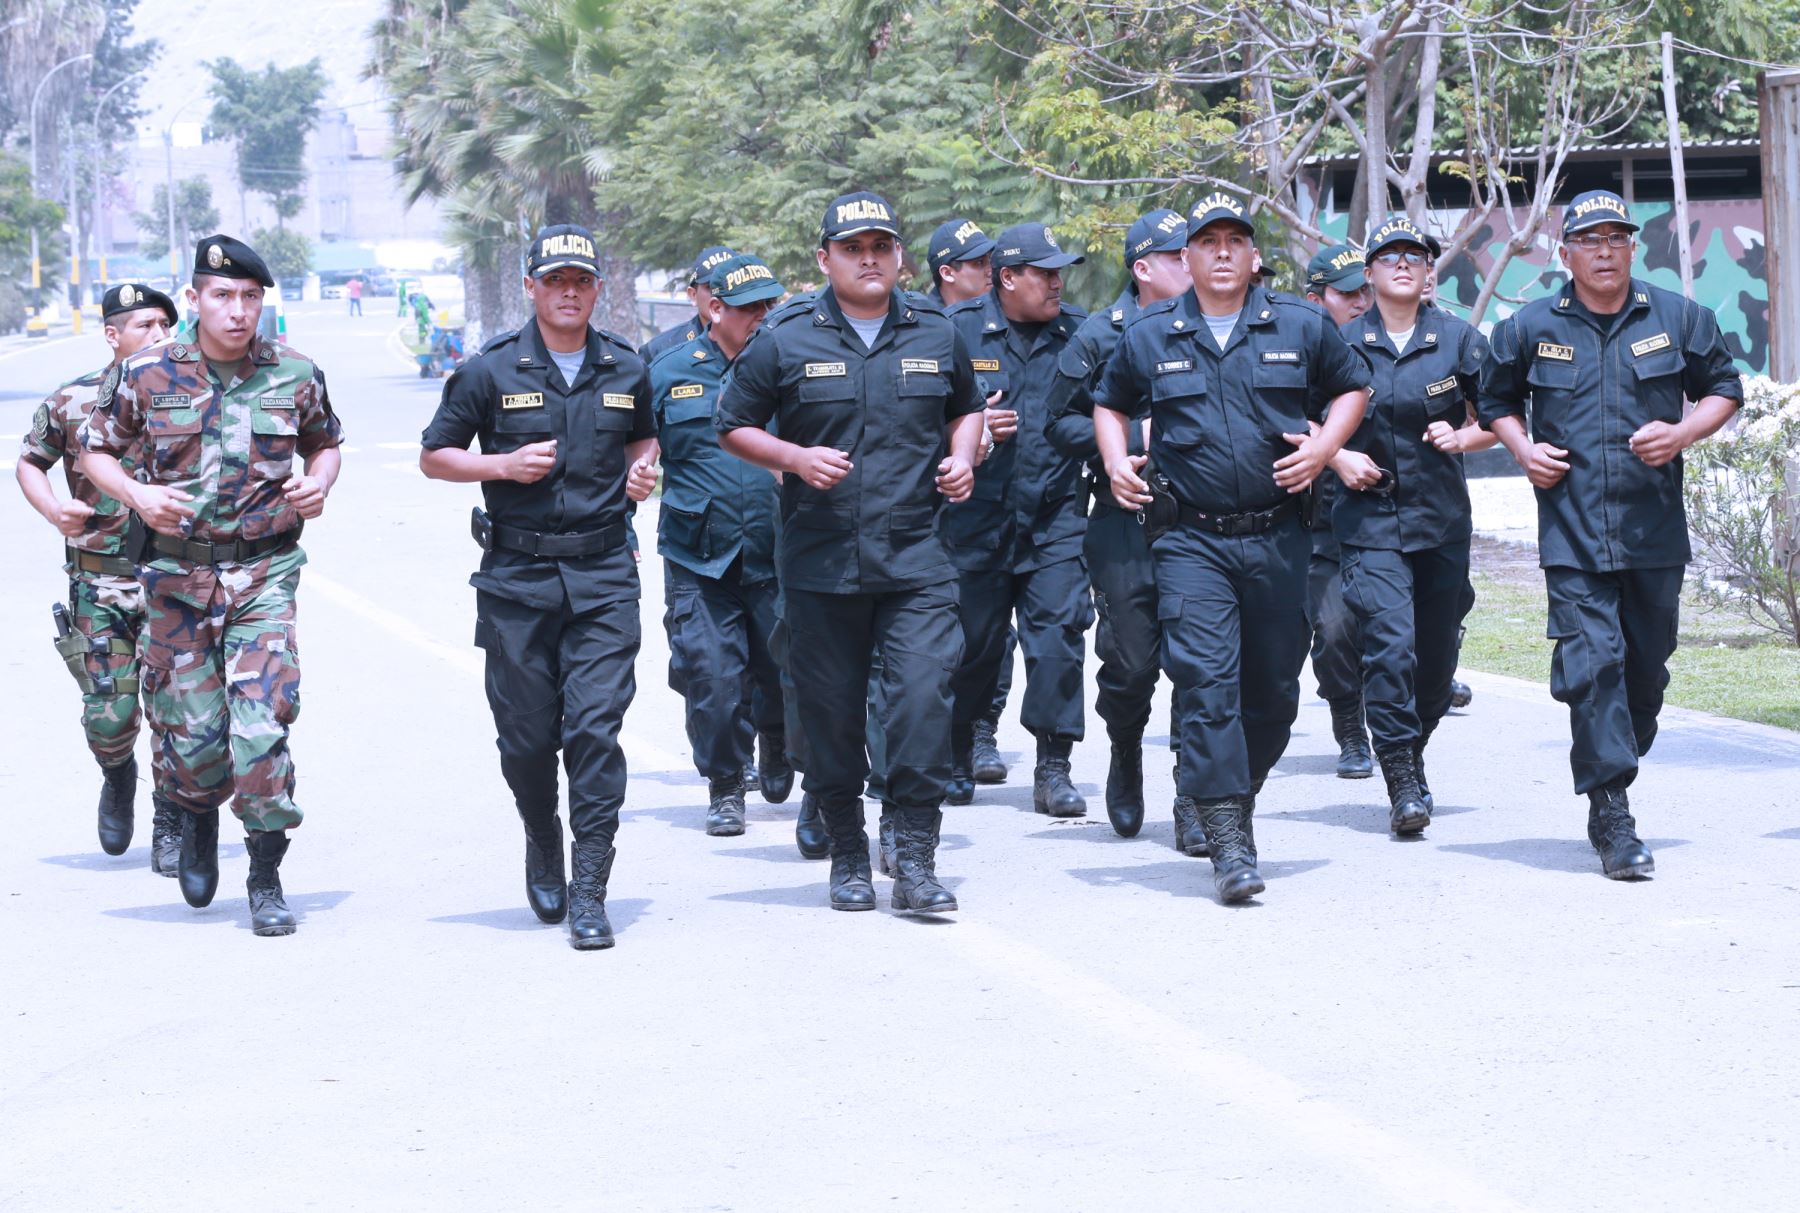 El Ejecutivo prorrogó el estado de emergencia en el distrito de Tumán, provincia de Chiclayo, departamento de Lambayeque, por el término de 30 días calendario a partir de mañana miércoles, plazo en el que la Policía Nacional del Perú mantendrá el control del orden interno, con el apoyo de las Fuerzas Armadas. ANDINA/Norman Córdova